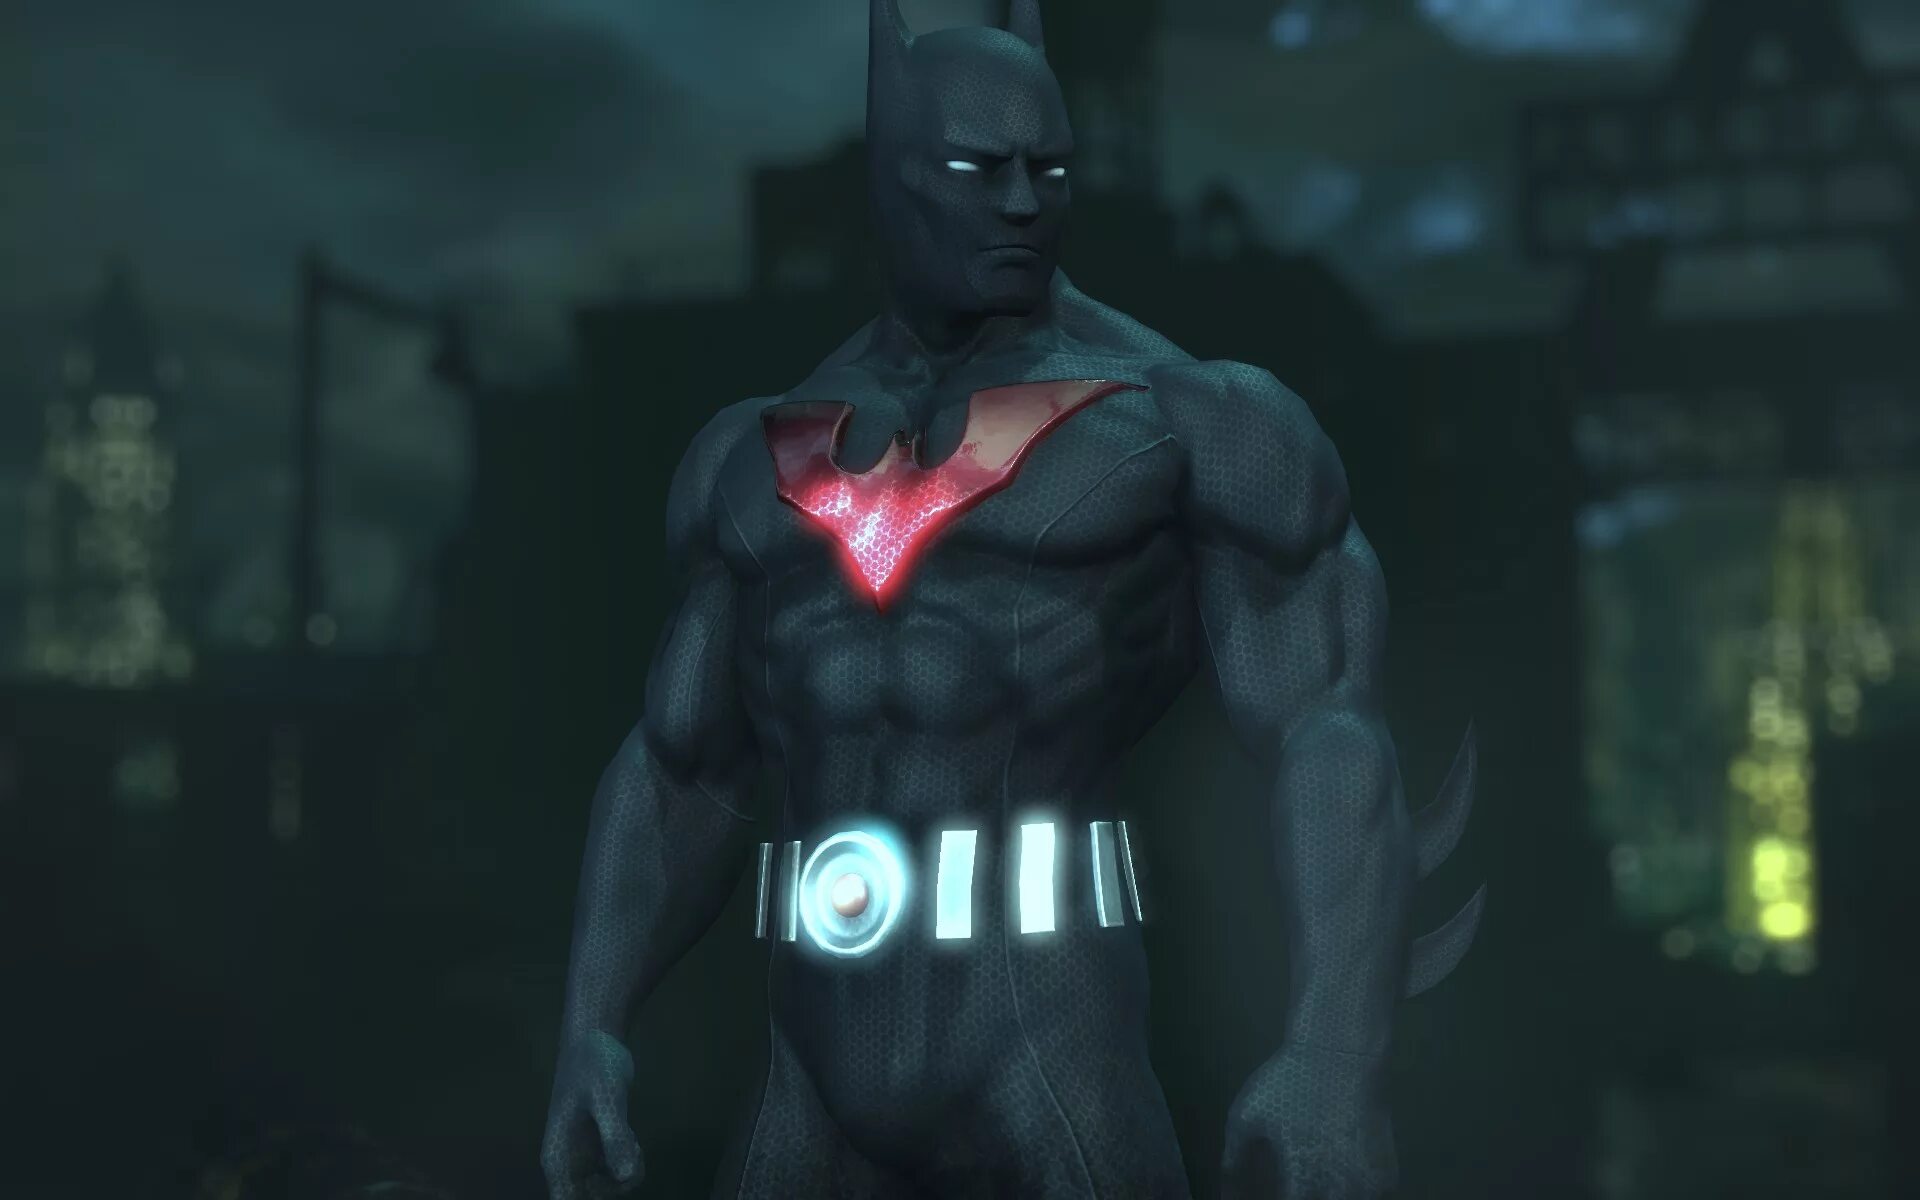 Бэтмен Аркхем Сити Бэтмен будущего. Бэтмен рыцарь Аркхема Бэтмен будущего. Бэтмен Бейонд Аркхем Сити. Бэтмен Аркхем Бэтмен будущего.